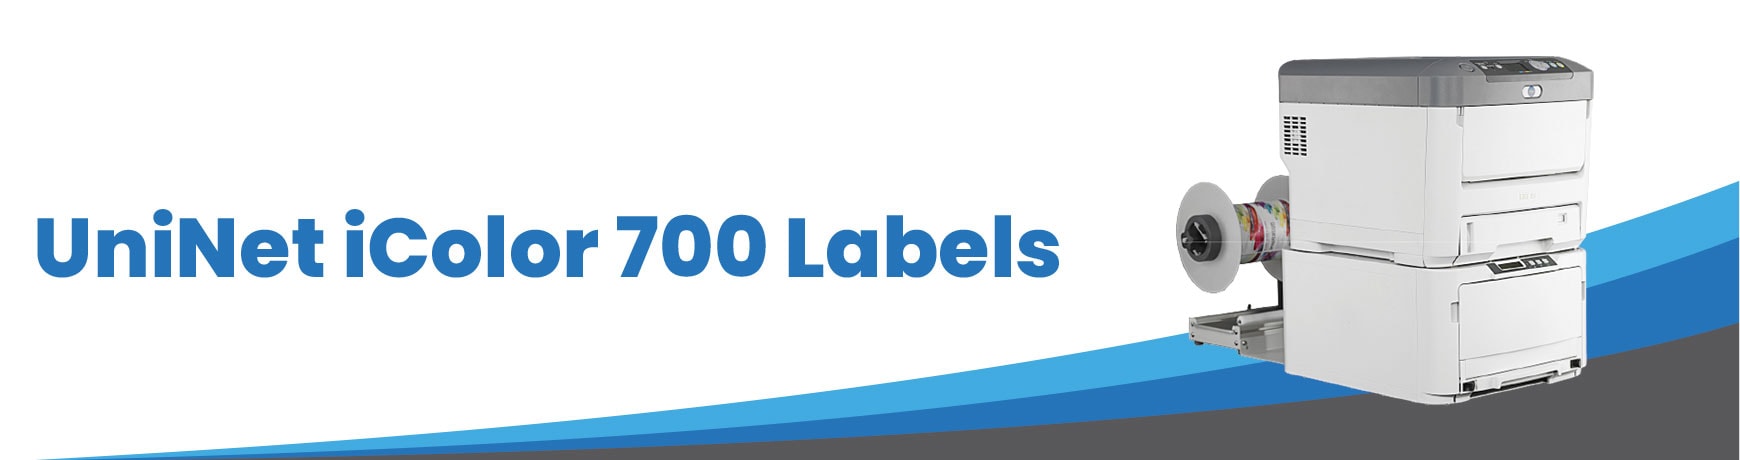 UniNet iColor 700 Labels